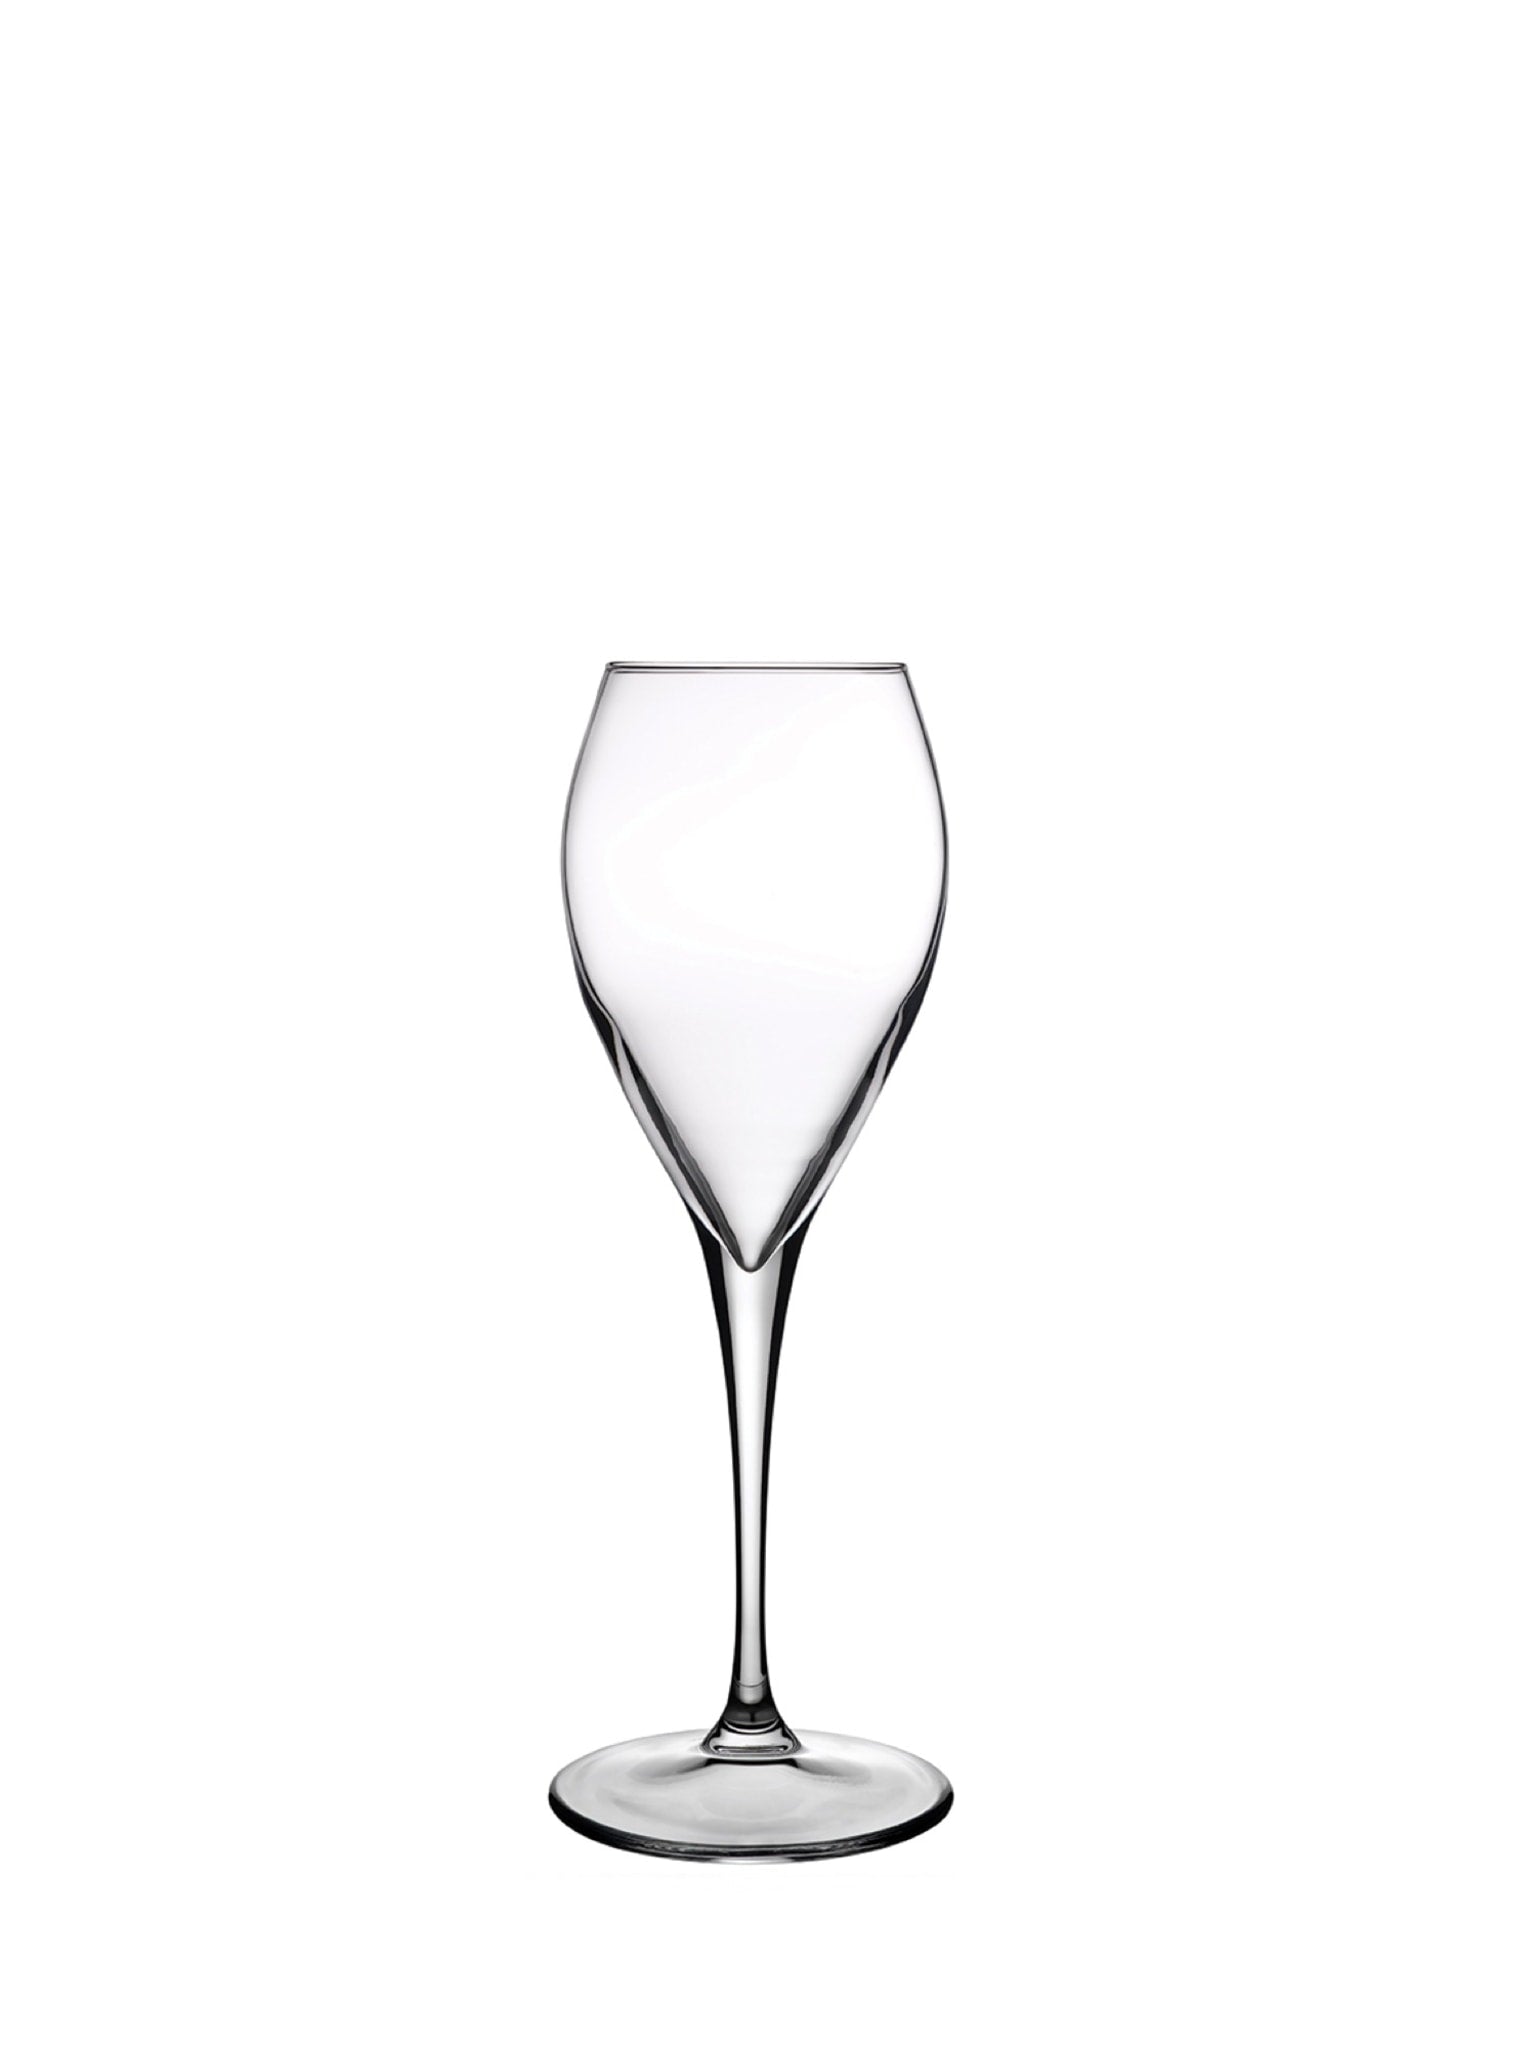 Monte Carlo rødvinsglas med en kapacitet på 36 cl - perfekt til servering af din foretrukne rødvin.